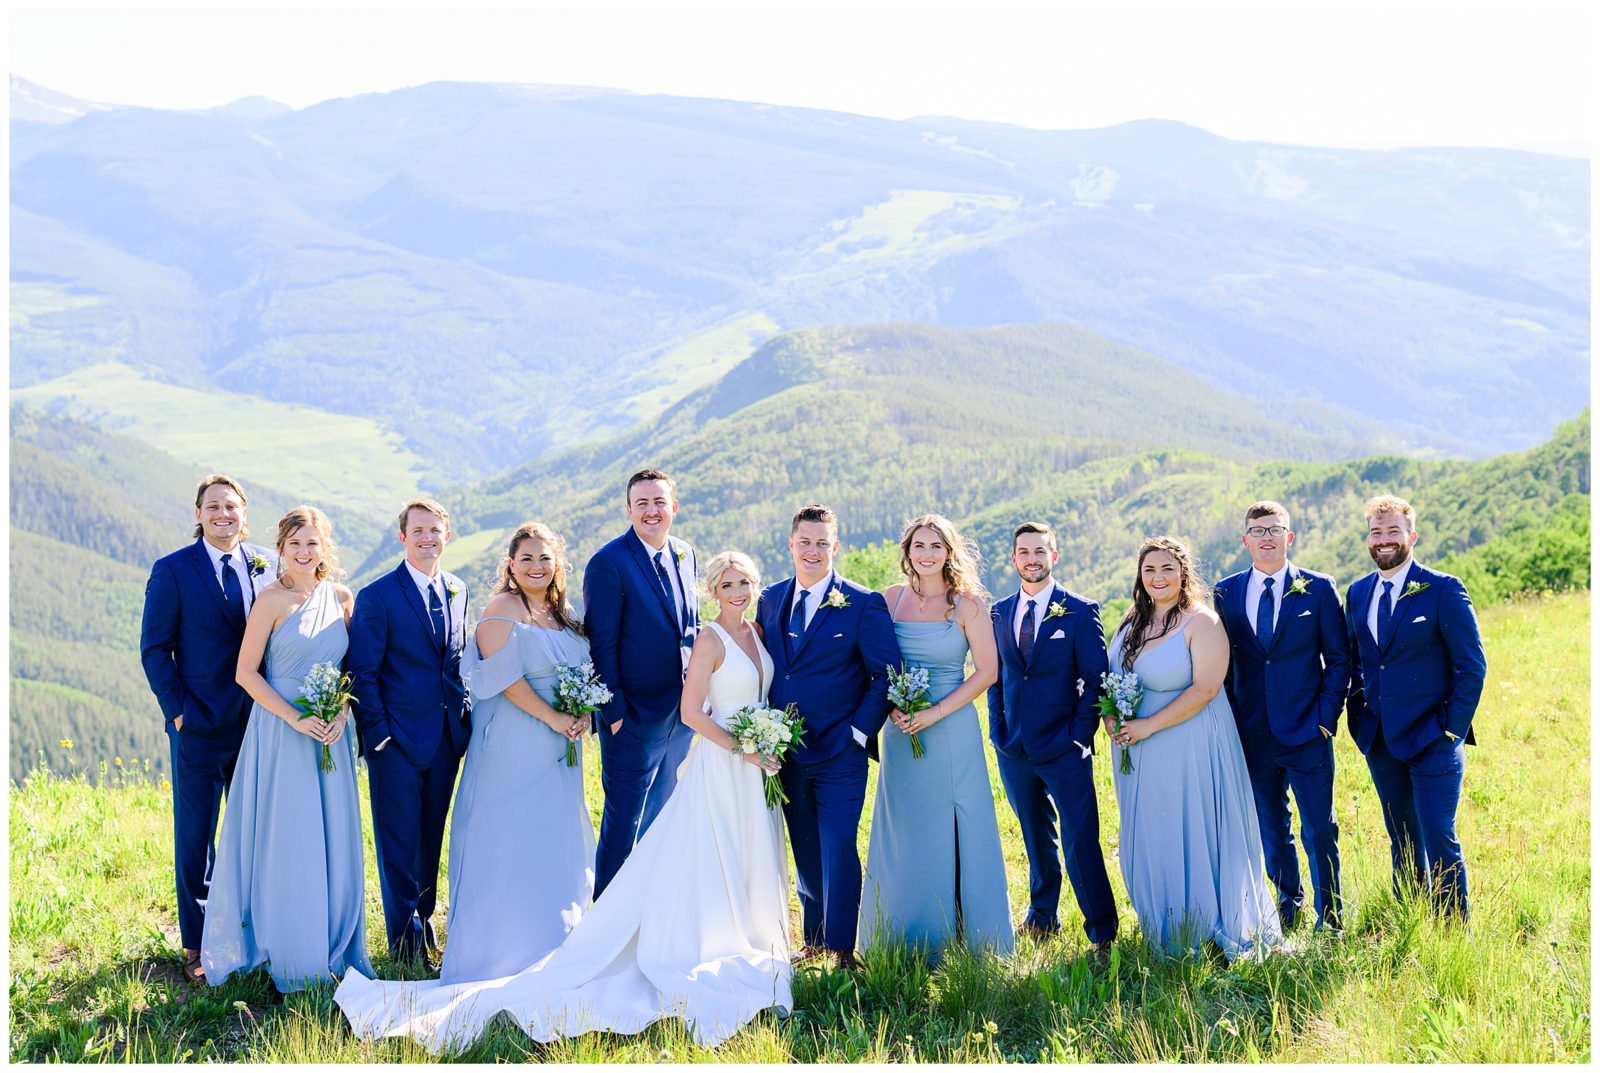 Vail wedding deck in Colorado